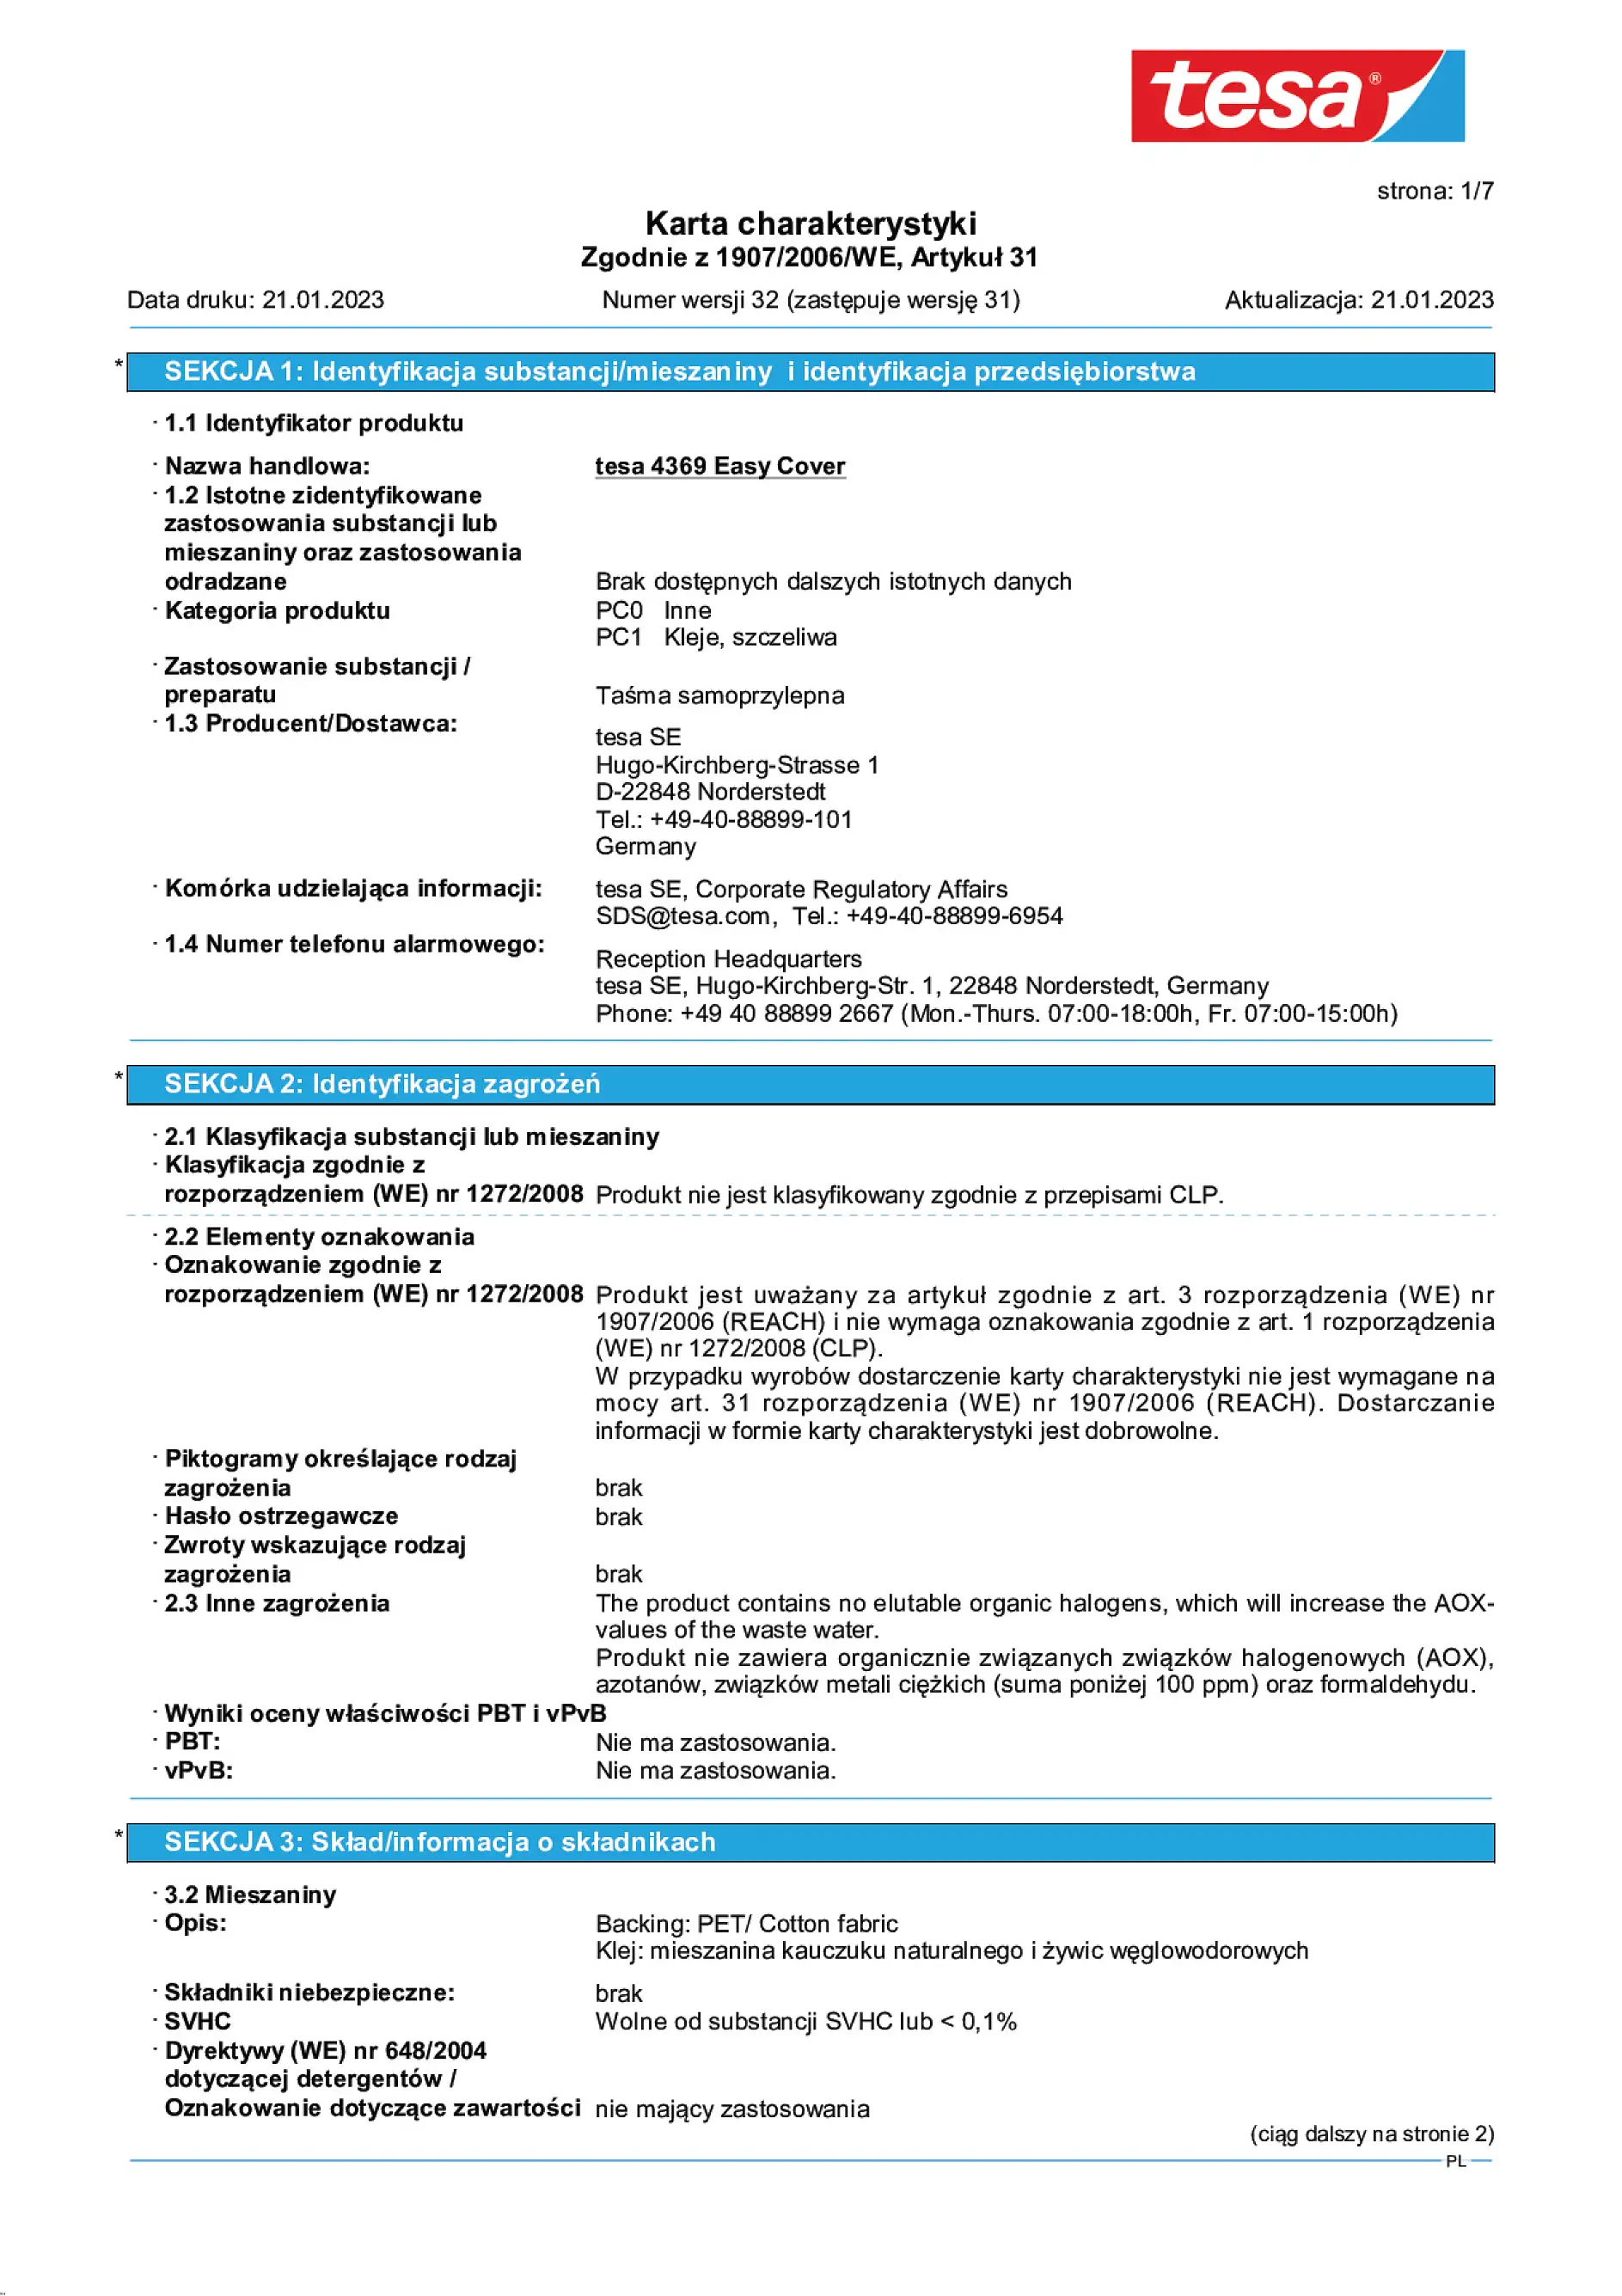 Safety data sheet_tesa® Professional 04369_pl-PL_v32